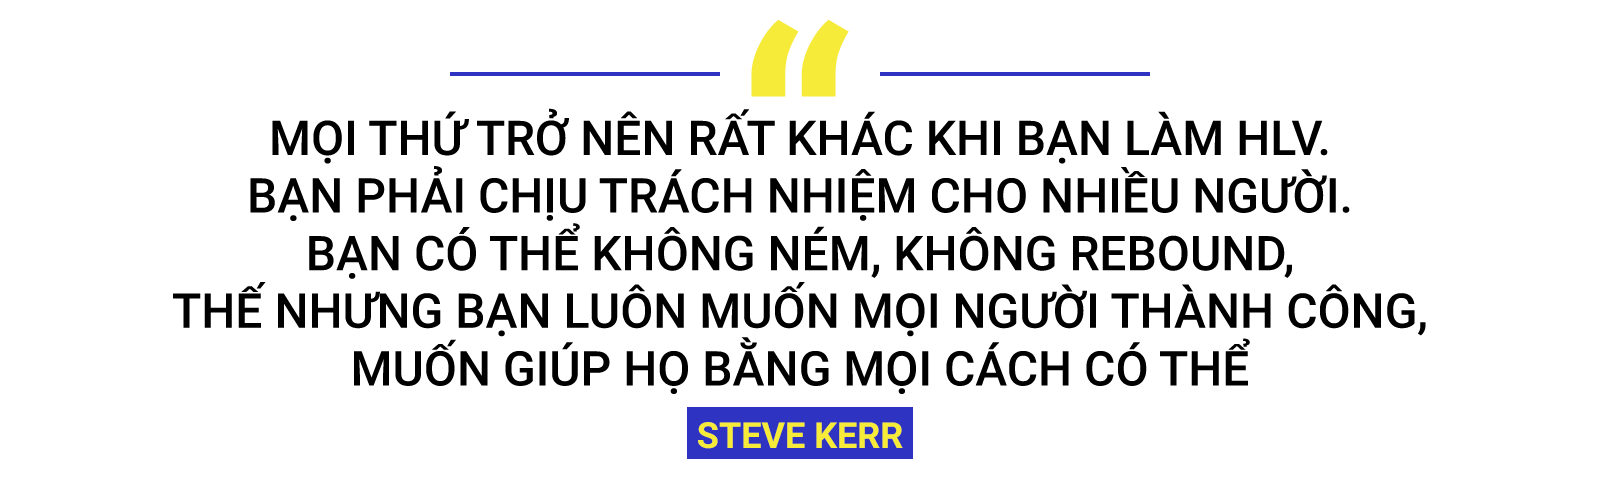 Chuyện Steve Kerr: Người thầy dành cả đời để học và cách dạy học trò chả giống ai - Ảnh 4.